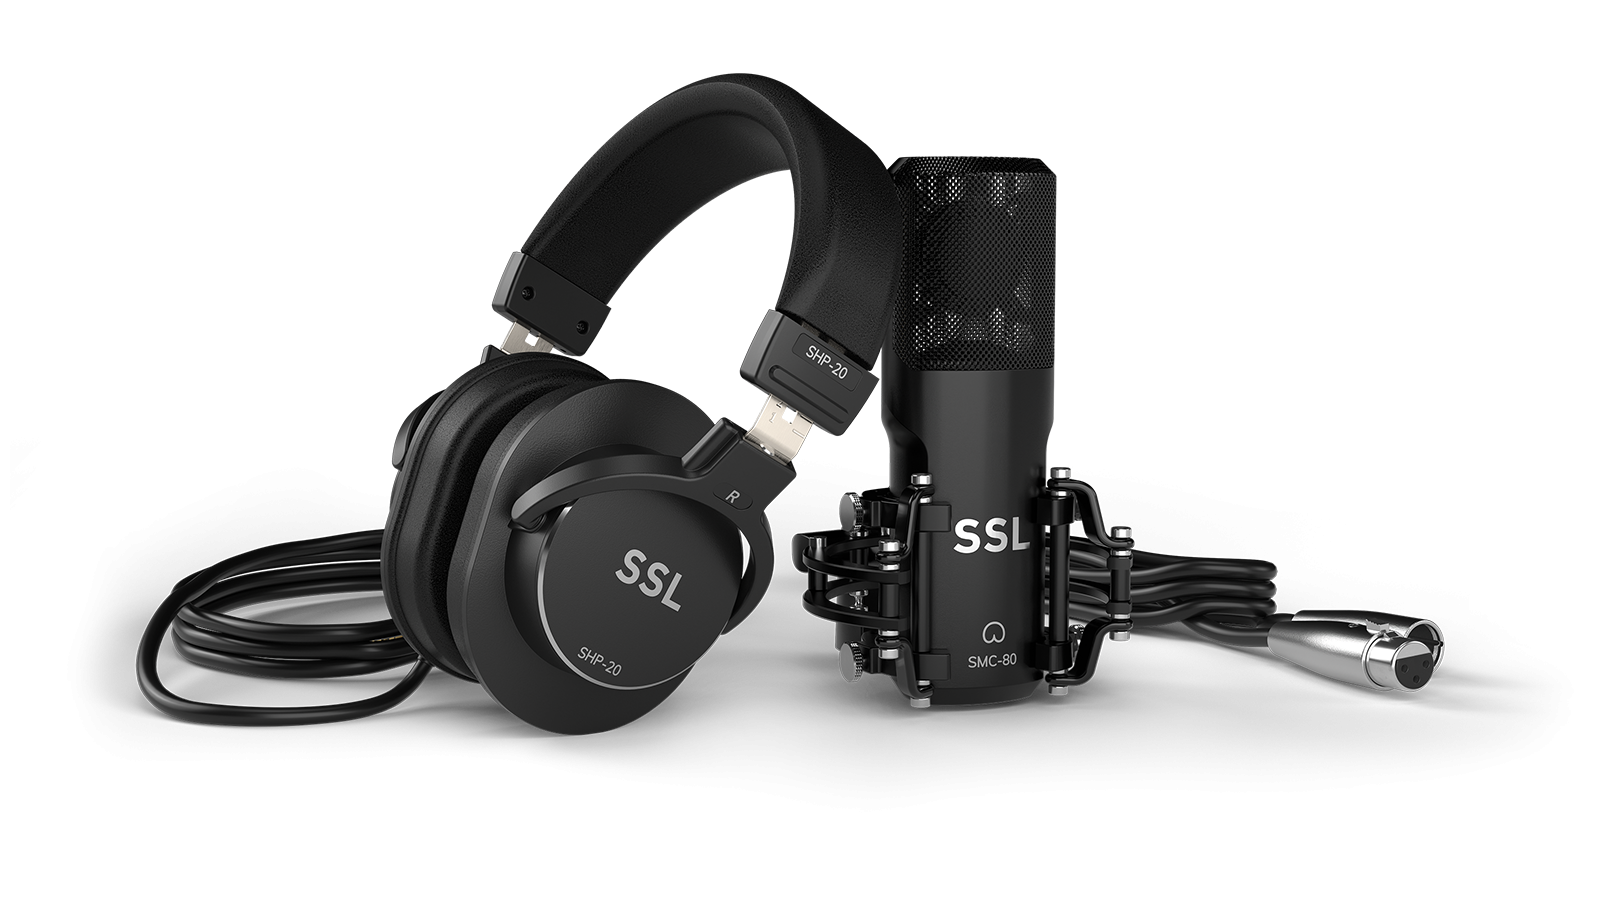 Micrófono condensador de estudio SMC-80 con soporte antivibración y adaptador de rosca, auriculares cerrados SHP 20, y cable XLR incluidos en SSL Recording Pack (faltan en la imagen los interfaces SSL 2 o SSL 2+, a elegir)